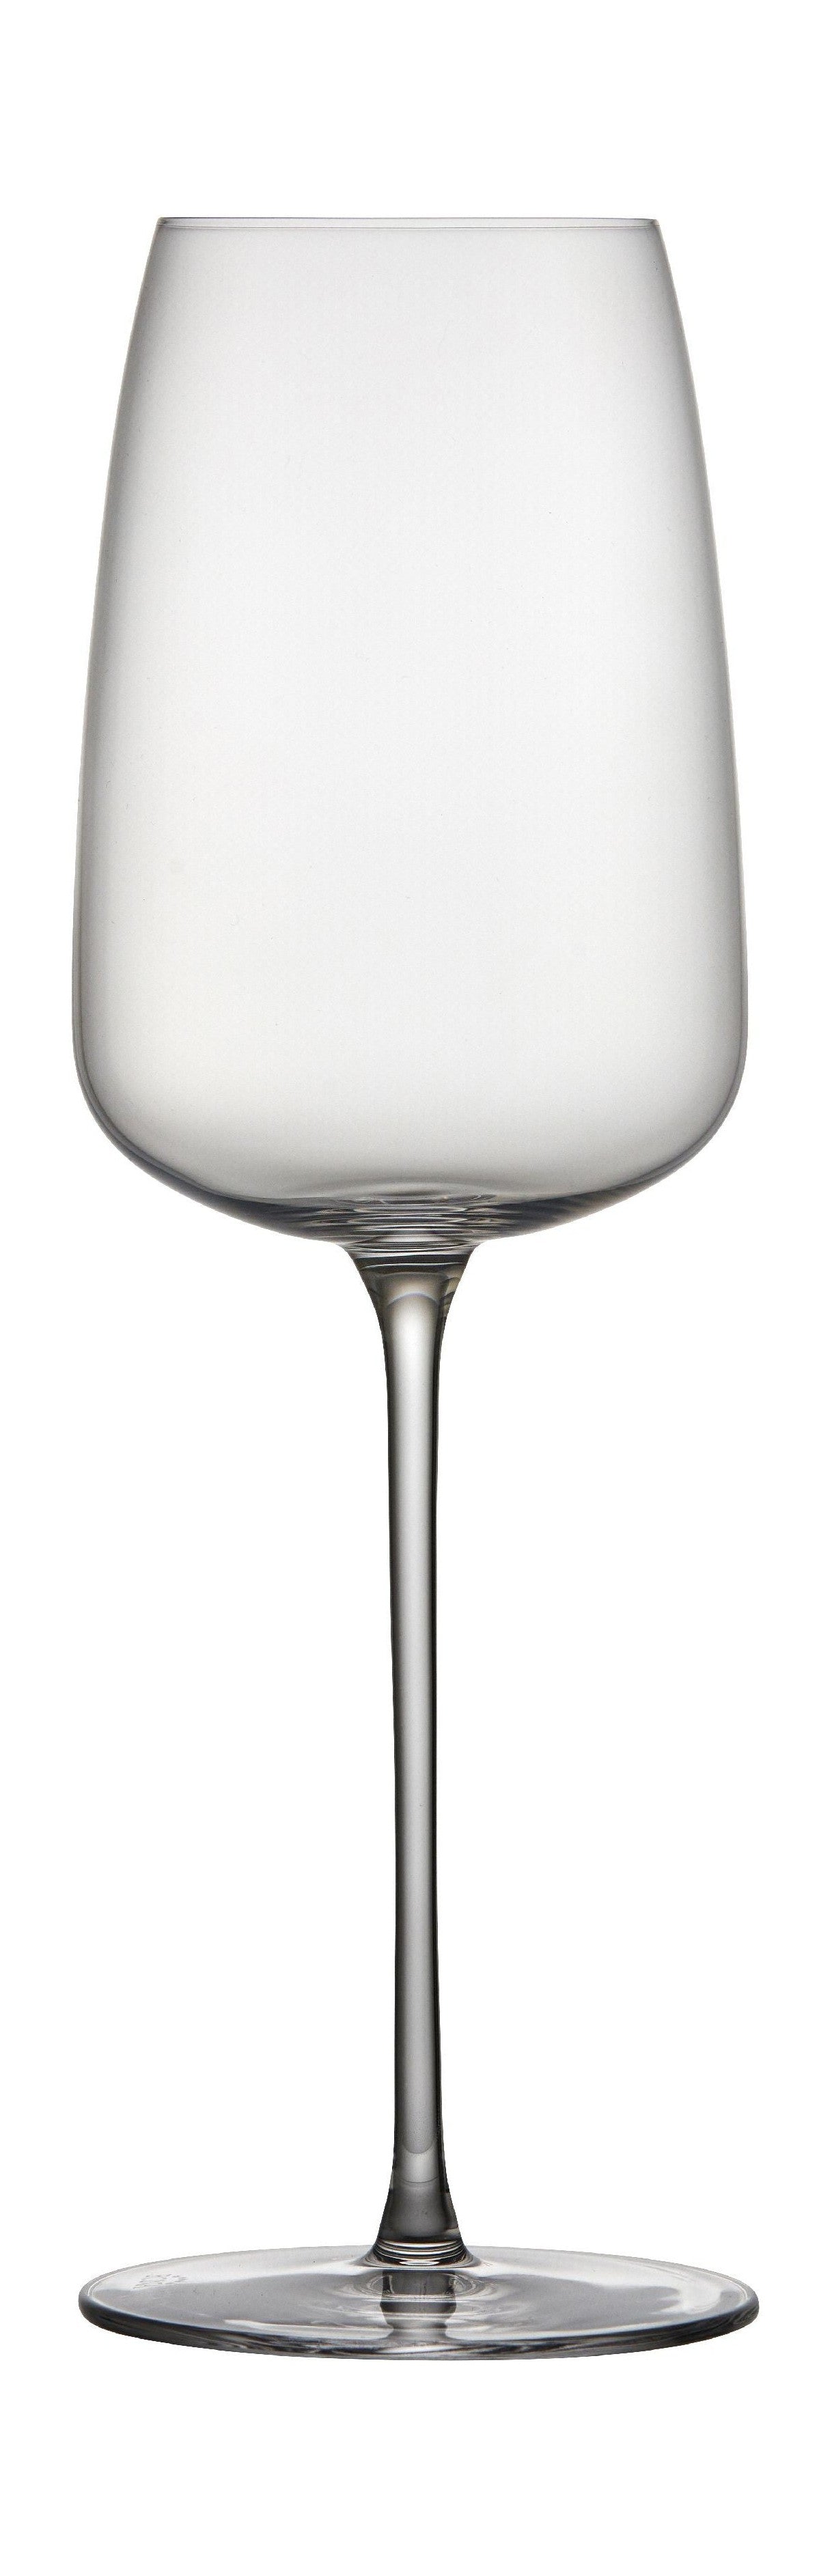 Lyngby Glas Veneto Witte Wijn Glas 48 Cl 2 Pcs